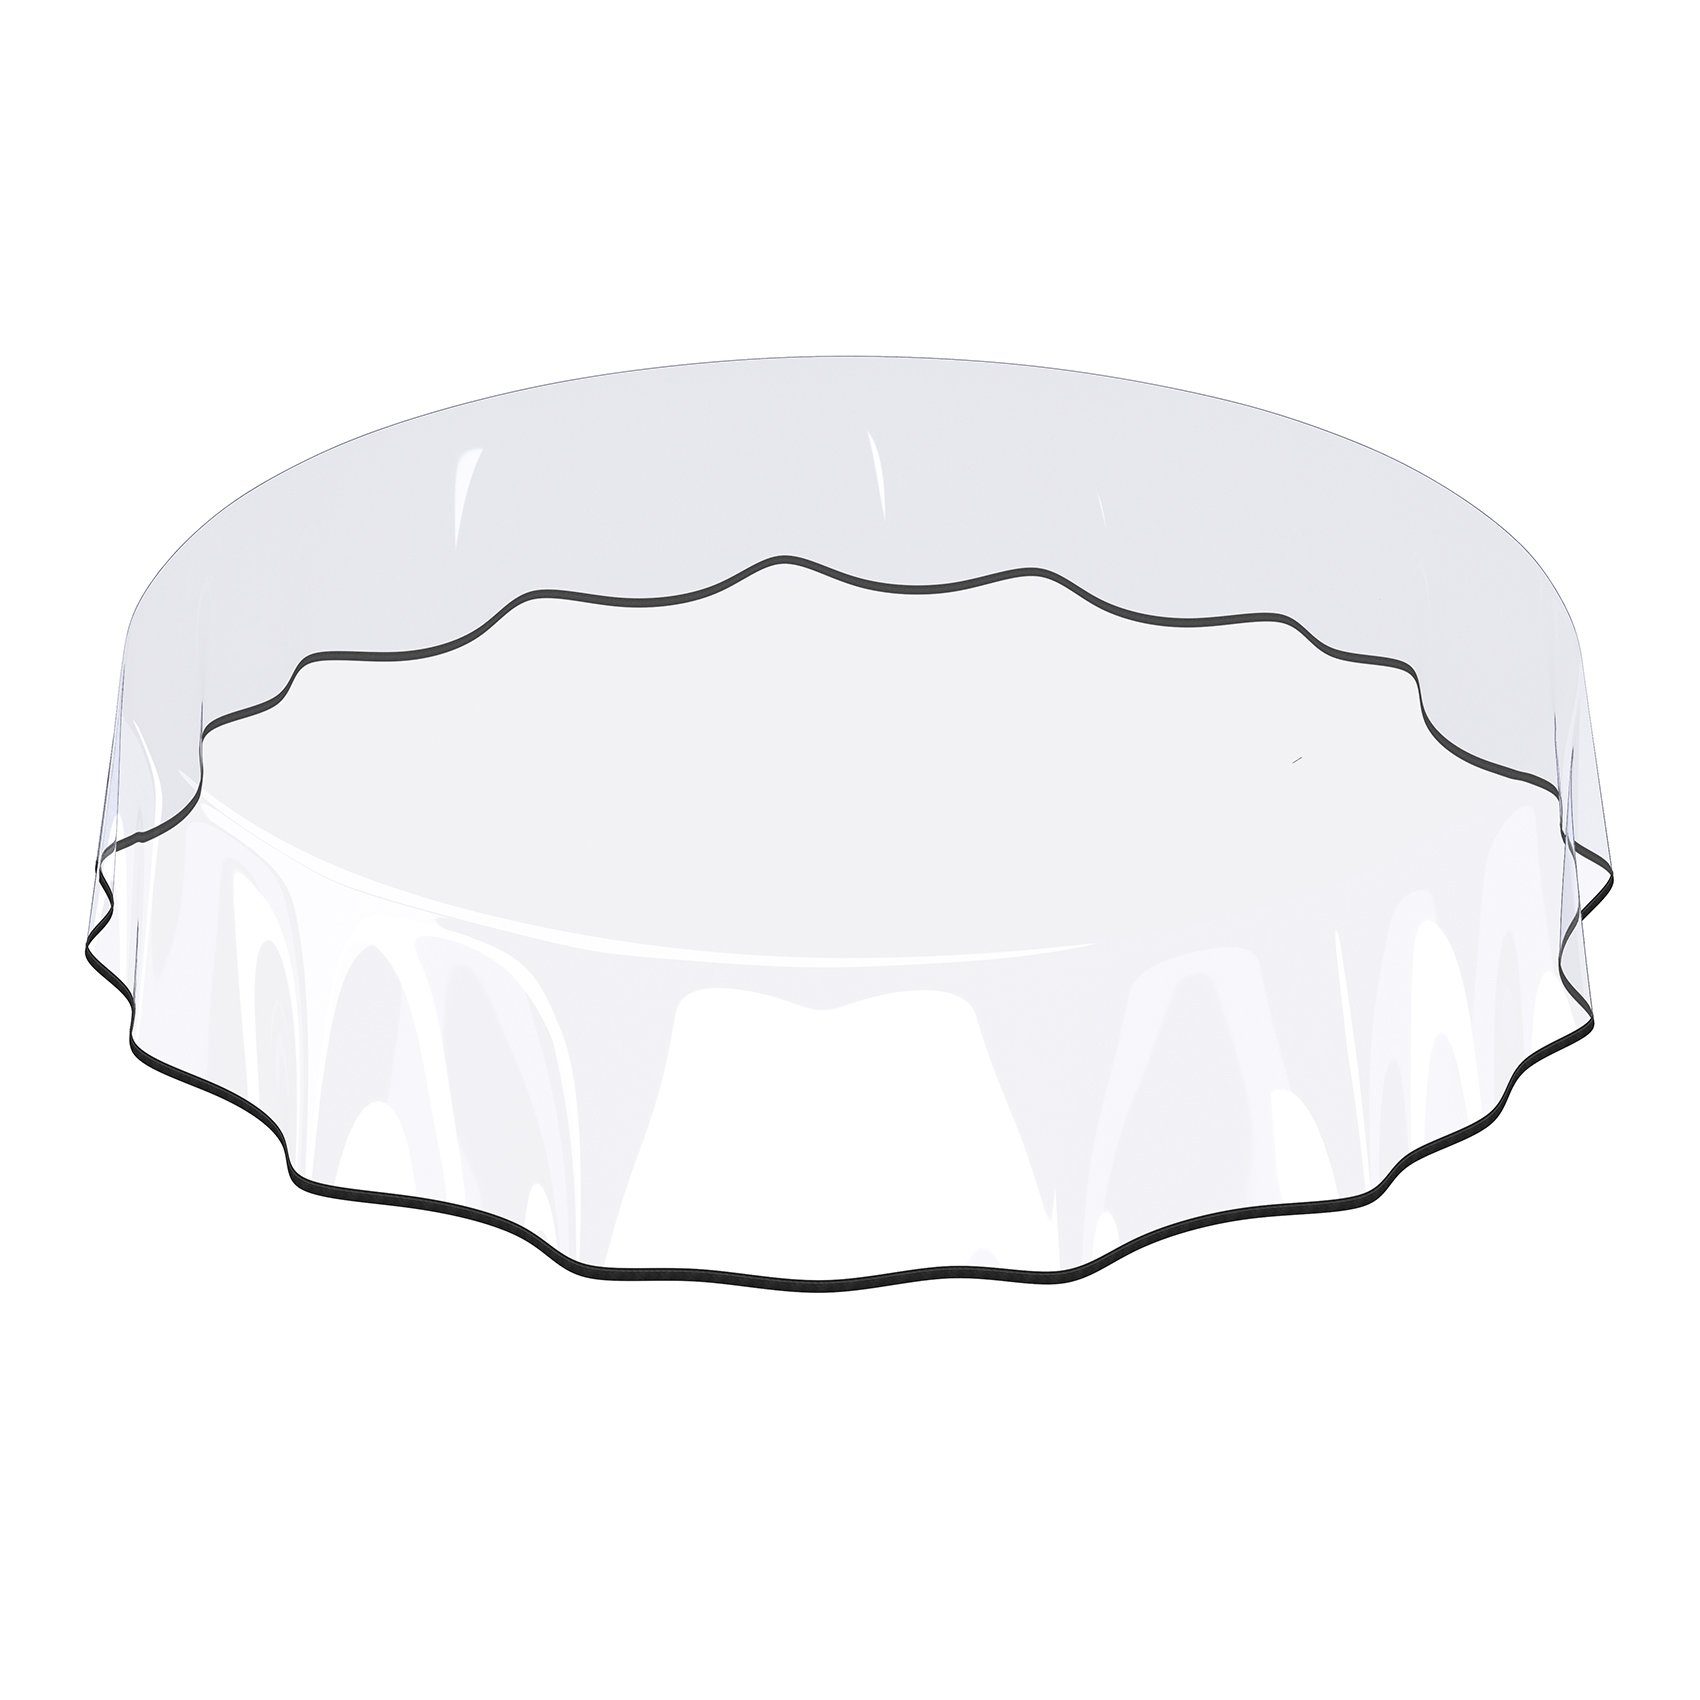 ANRO Tischdecke Tischdecke Klara Transparent Transparent Robust Wasserabweisend Breite, Glatt